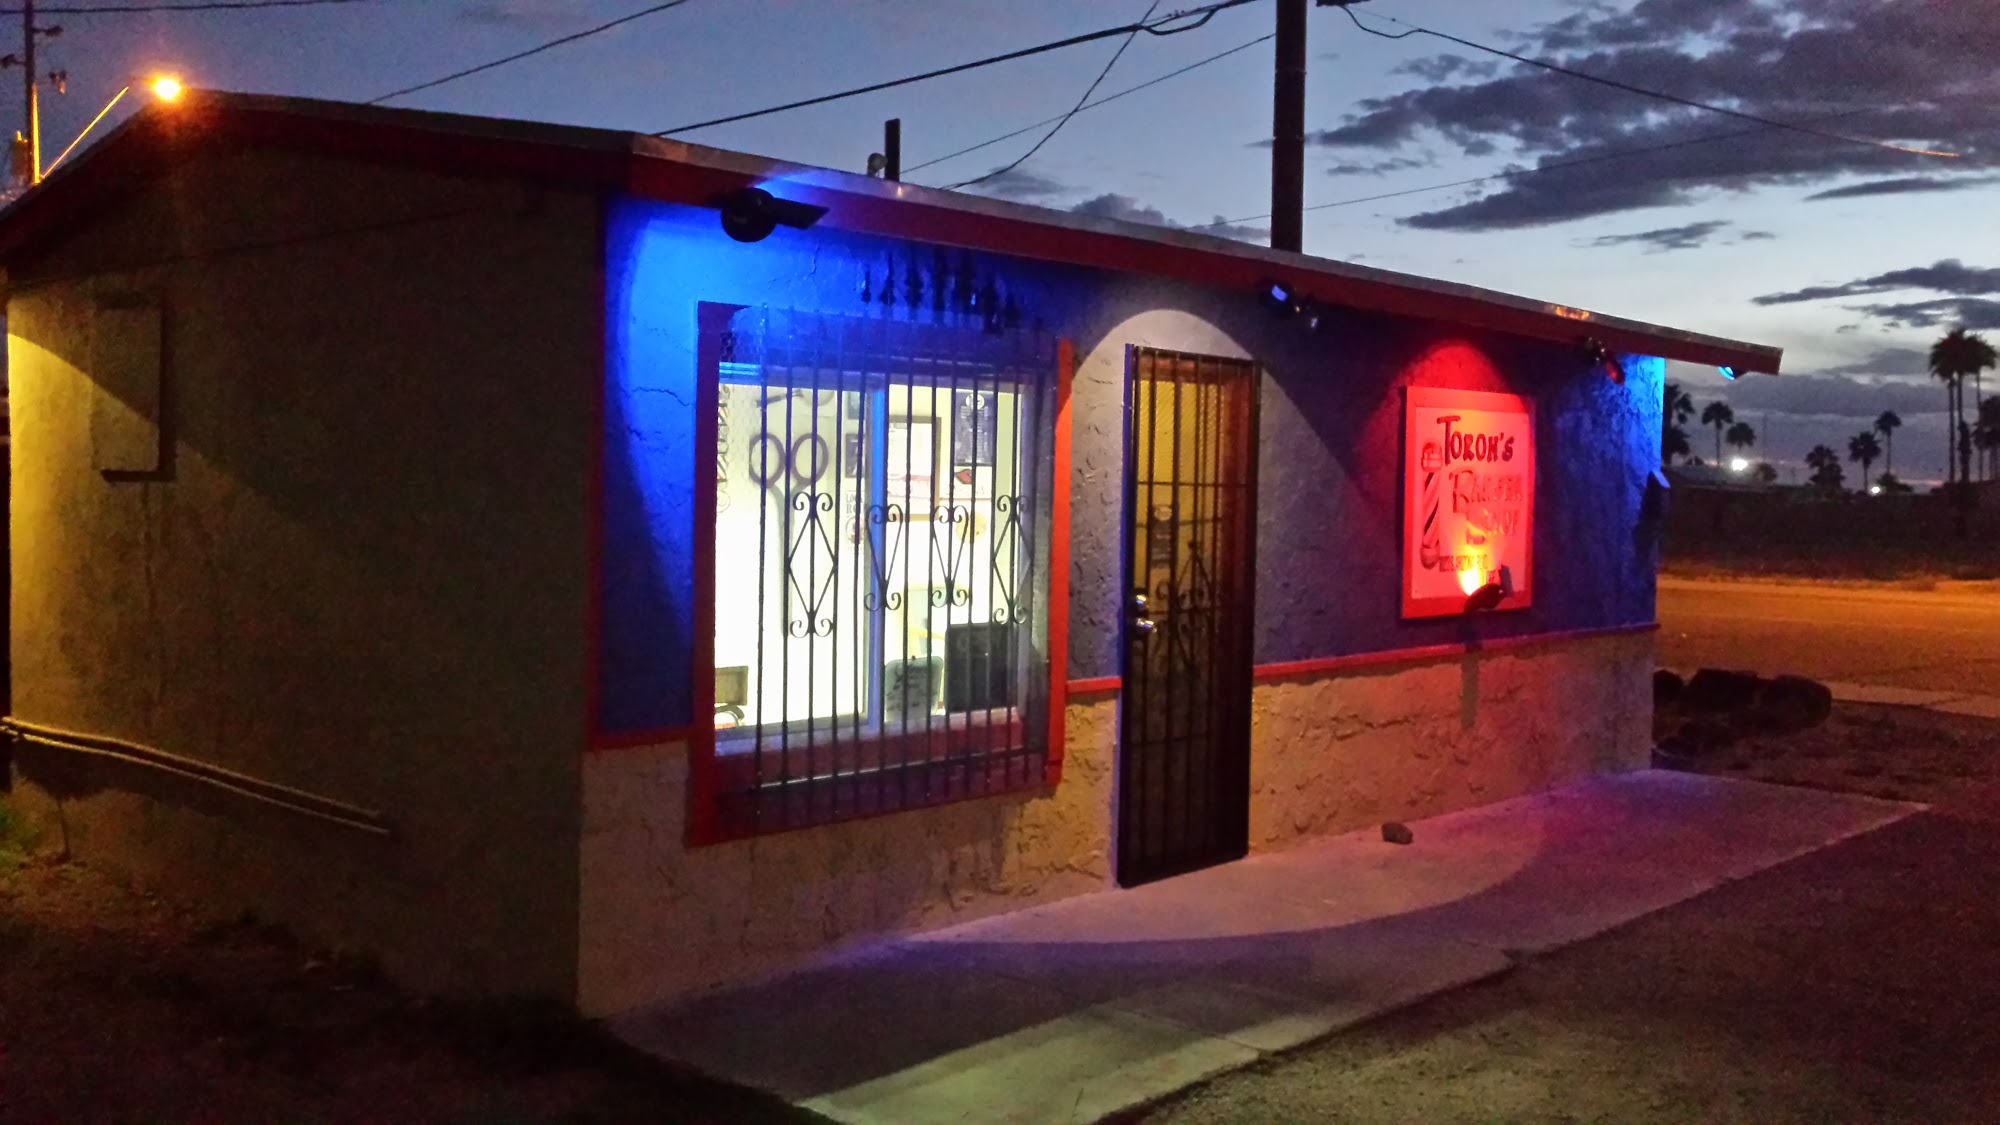 Toron's Barber Shop 1023 S Arizona Blvd, Coolidge Arizona 85128